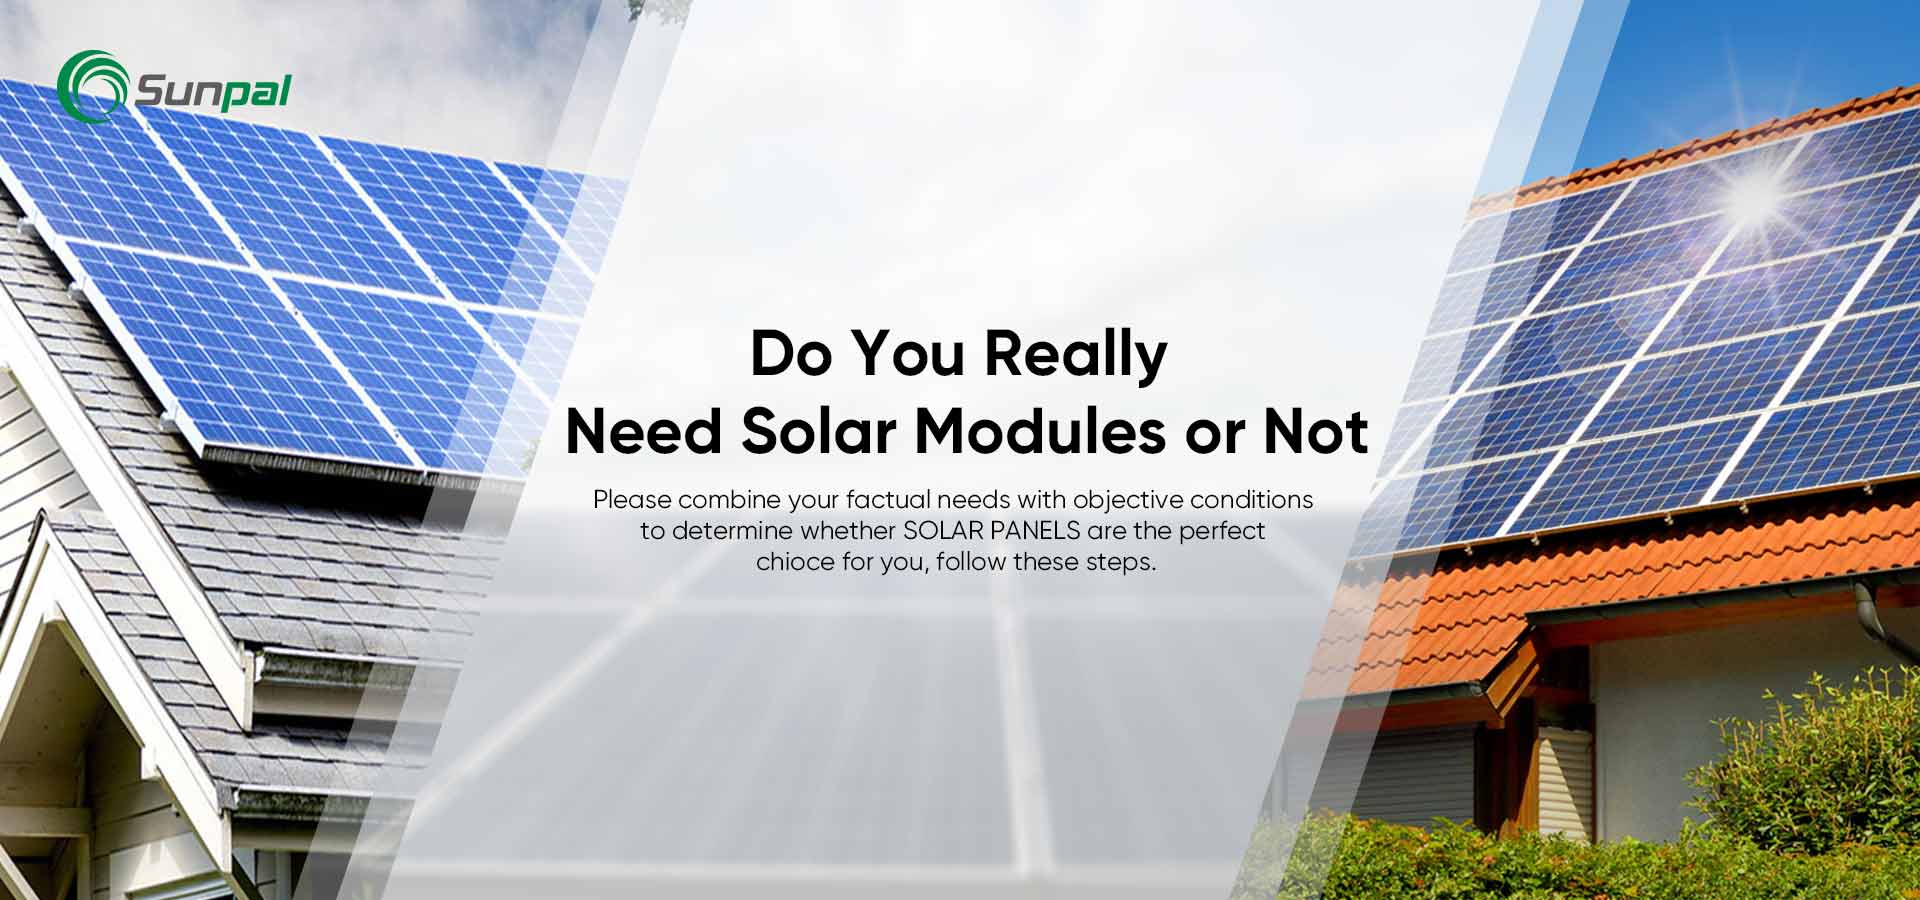 Les panneaux solaires sont-ils faits pour vous ? 8 signes que vous devriez opter pour l'énergie solaire